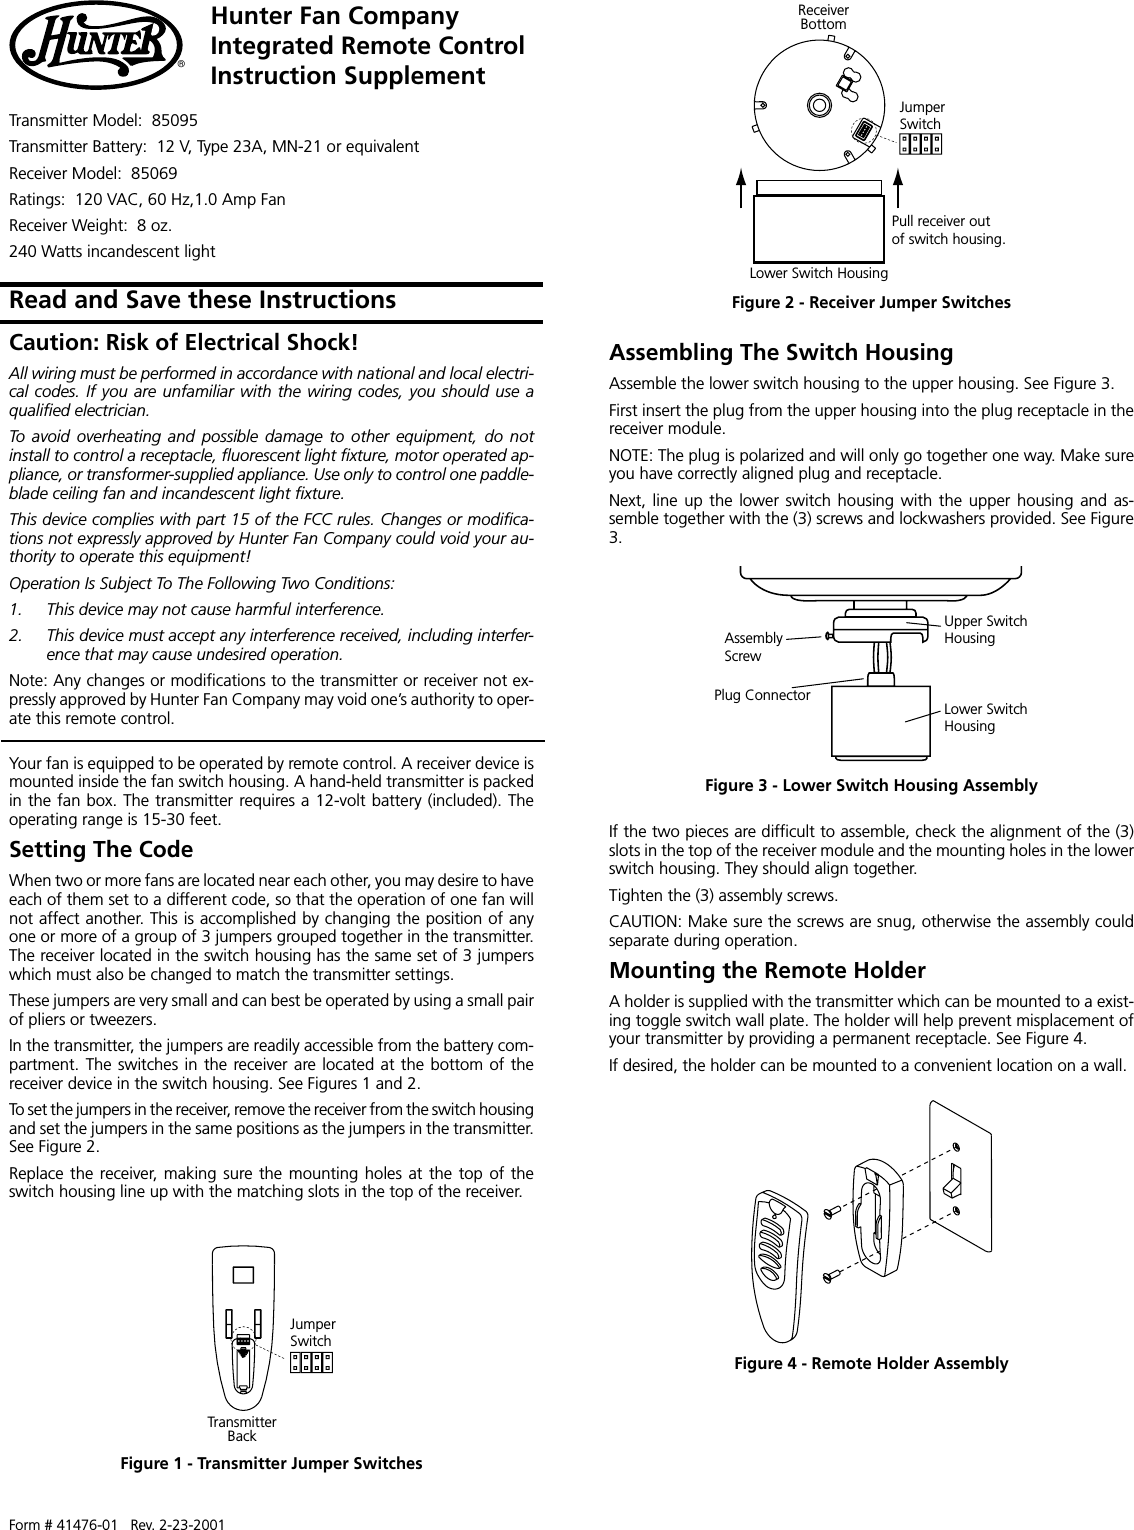 Hunter Fan Tx27 Ceiling Fan Remote Control Transmitter User Manual